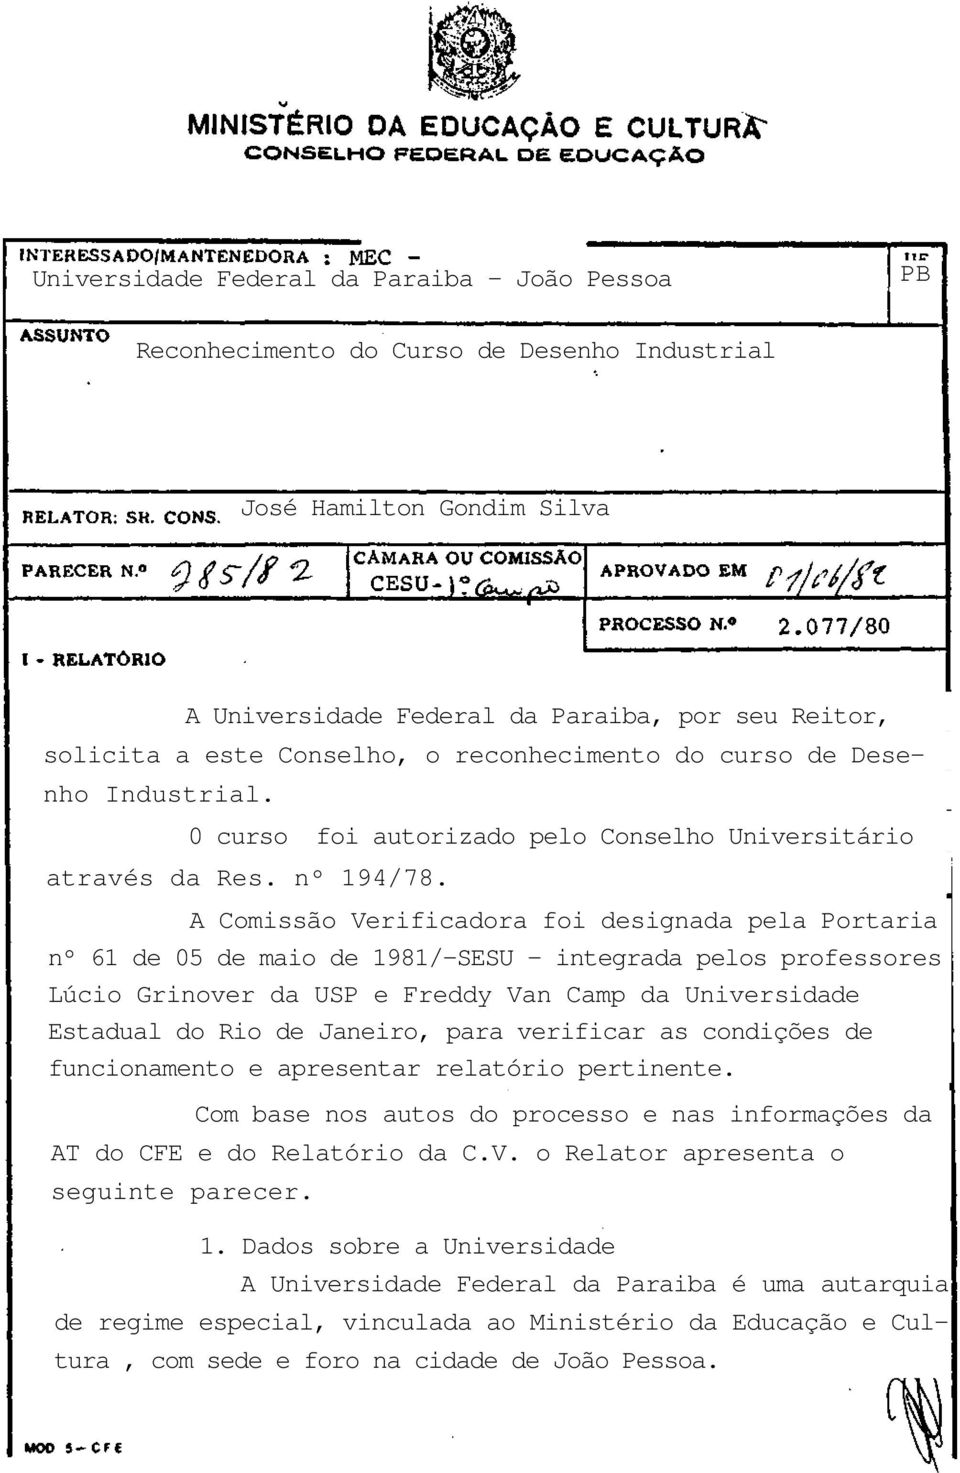 A Comissão Verificadora foi designada pela Portaria nº 61 de 05 de maio de 1981/-SESU - integrada pelos professores Lúcio Grinover da USP e Freddy Van Camp da Universidade Estadual do Rio de Janeiro,